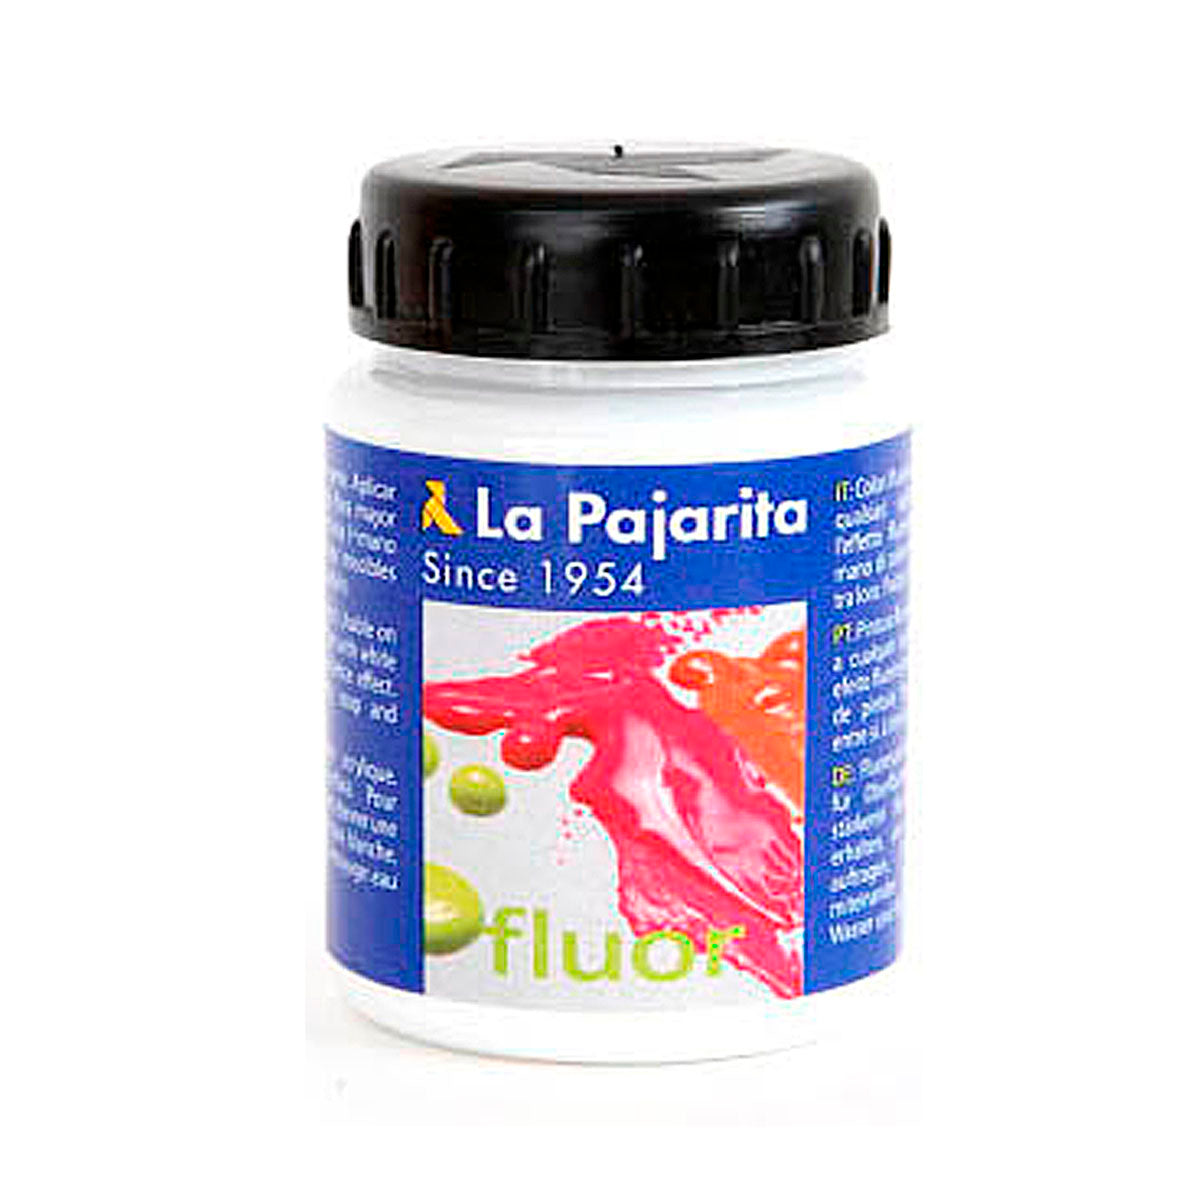 LA PAJARITA - Pintura Acrílica, Color Blanco Fluor F-00, Bote de 75 ml